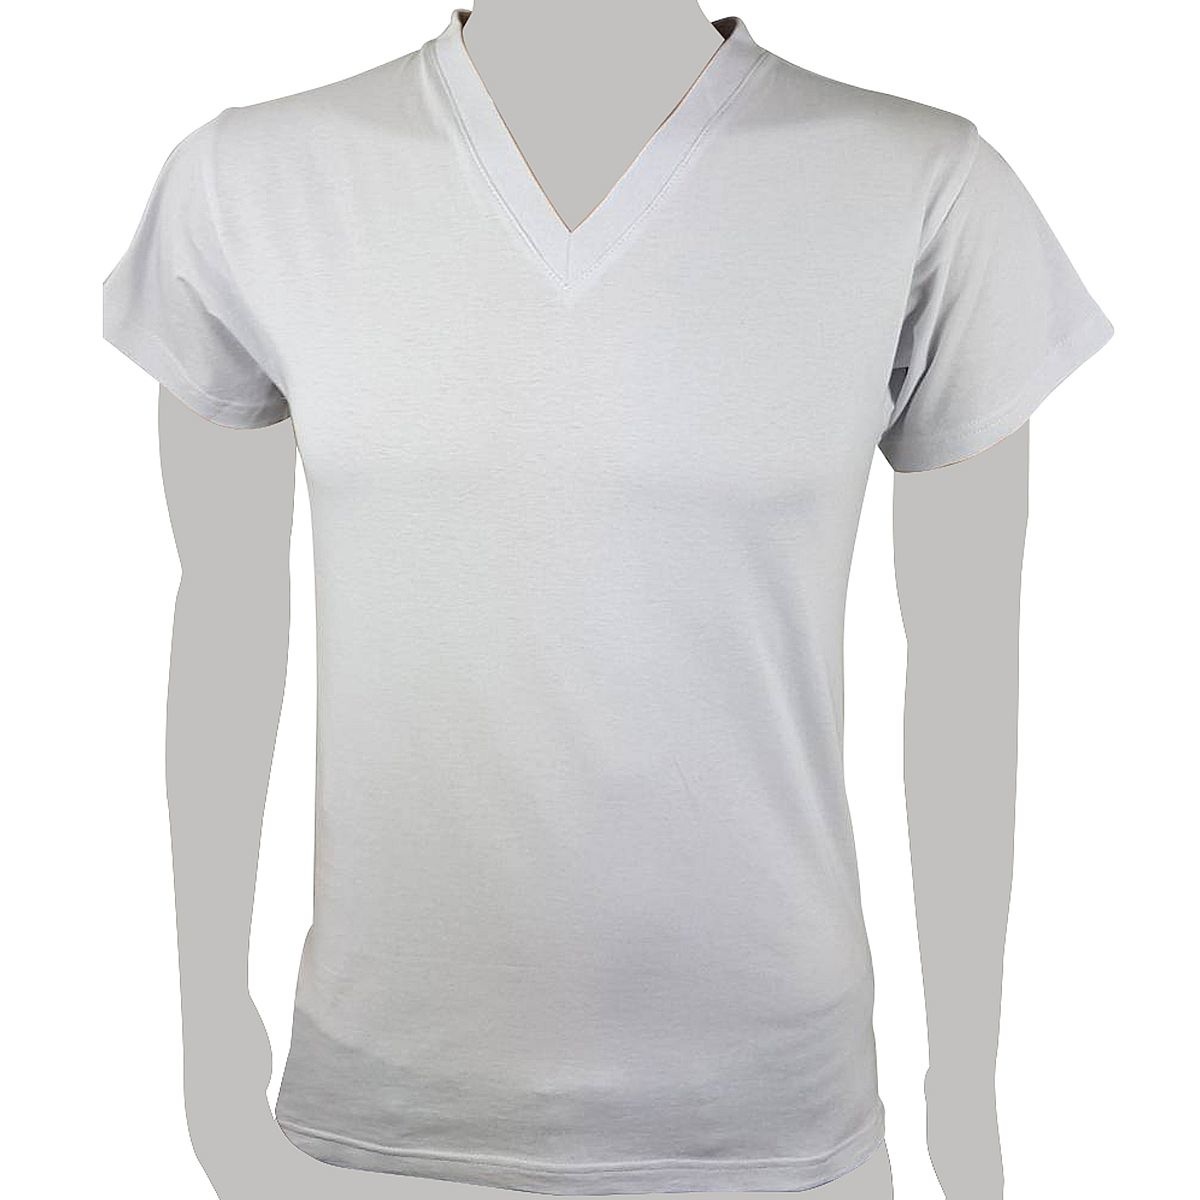 Anti-Schnarch-Shirt mit besonderem, ovalem Schaumstoff-Rückeneinsatz, 100% Baumwolle, Marke RVS®, Wirkungskasse RVS®-WK1, zur Rückenlageverhinderung bei Schnarchen